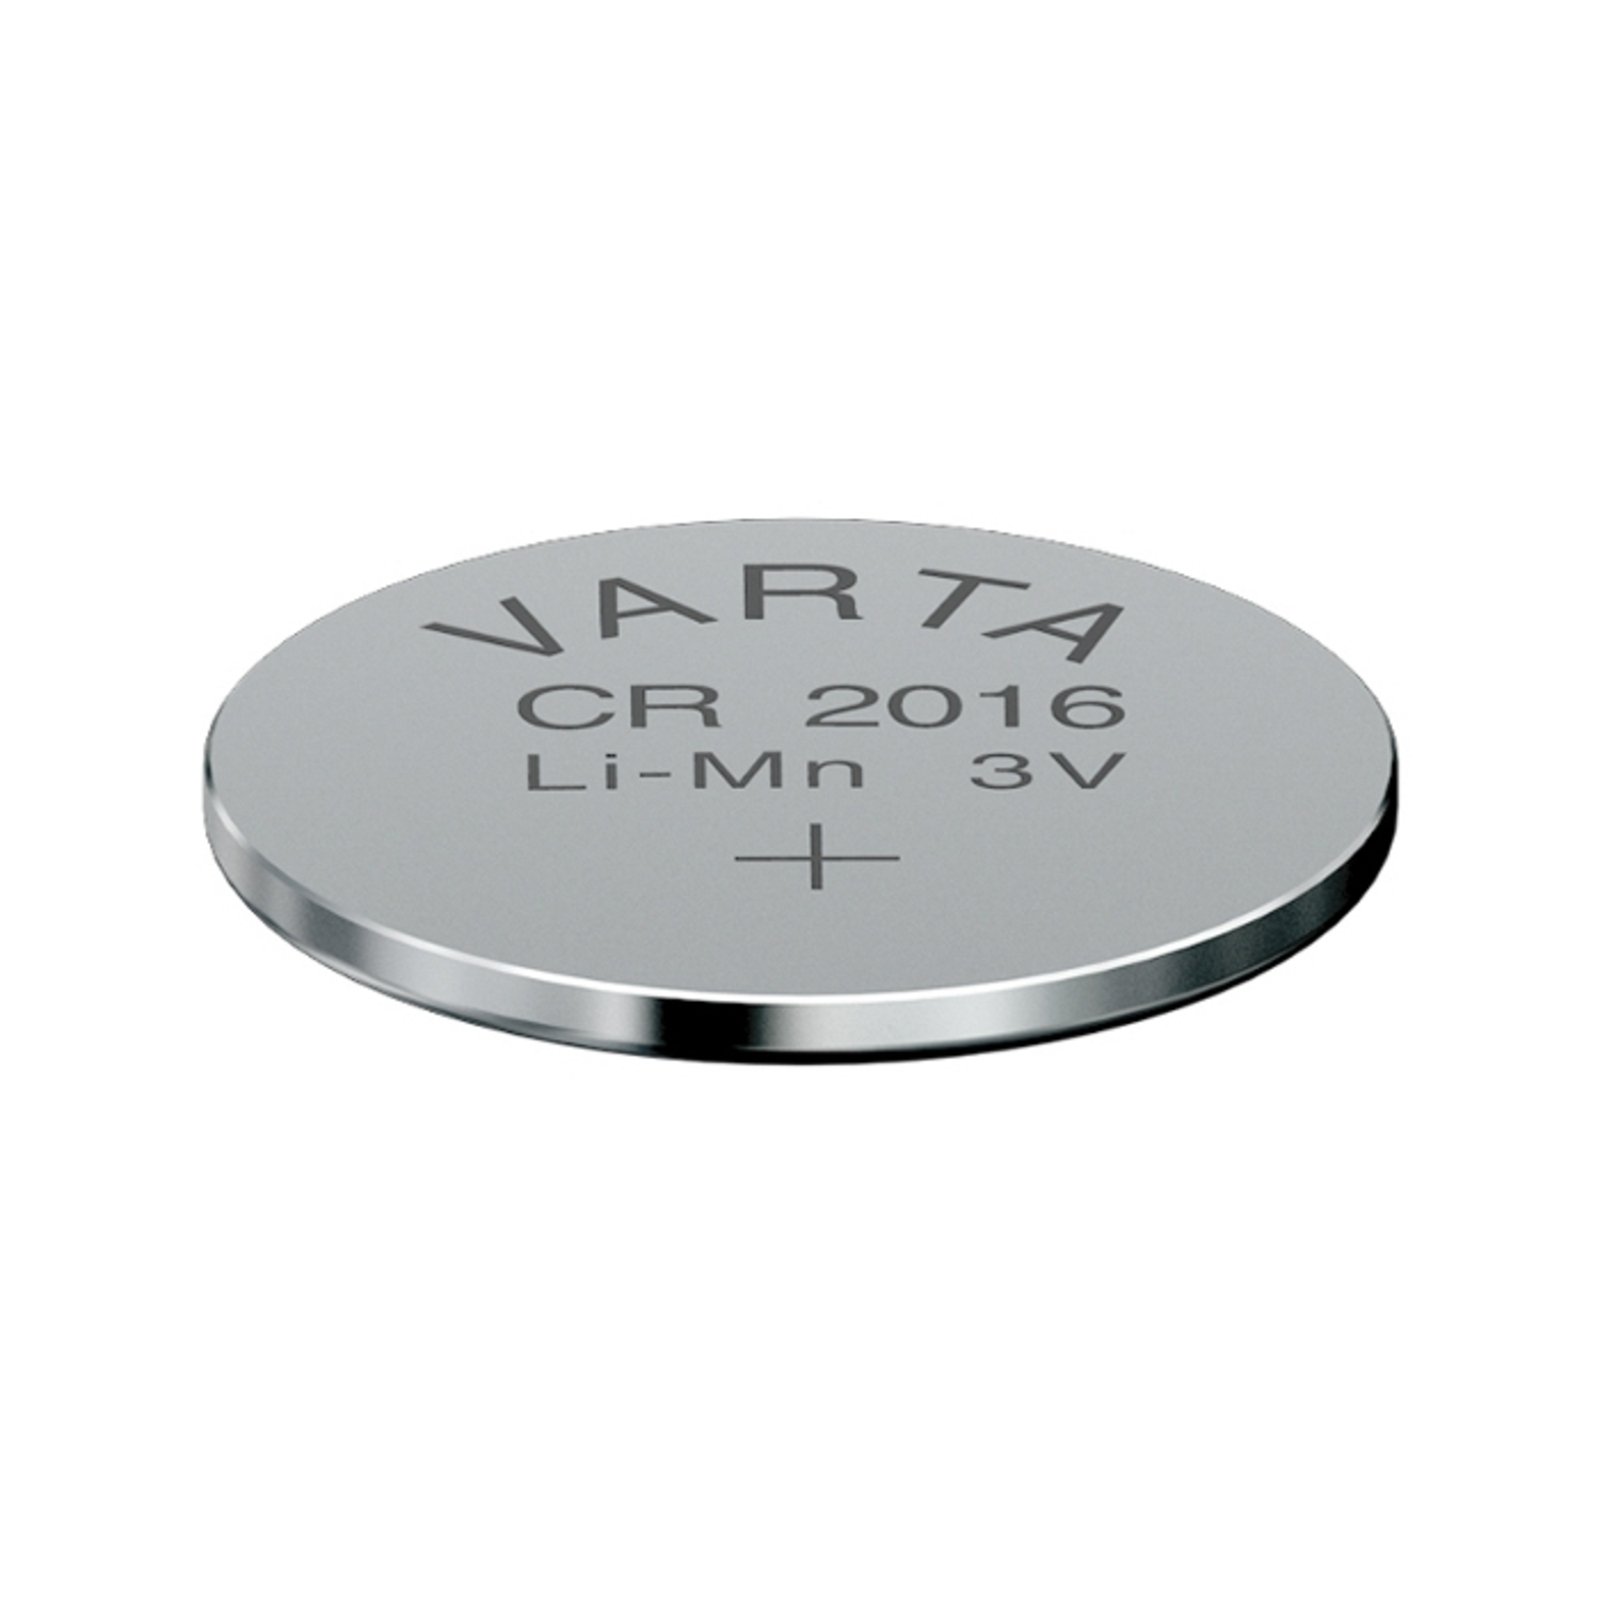 Litio CR2016 3V pila de botón de VARTA